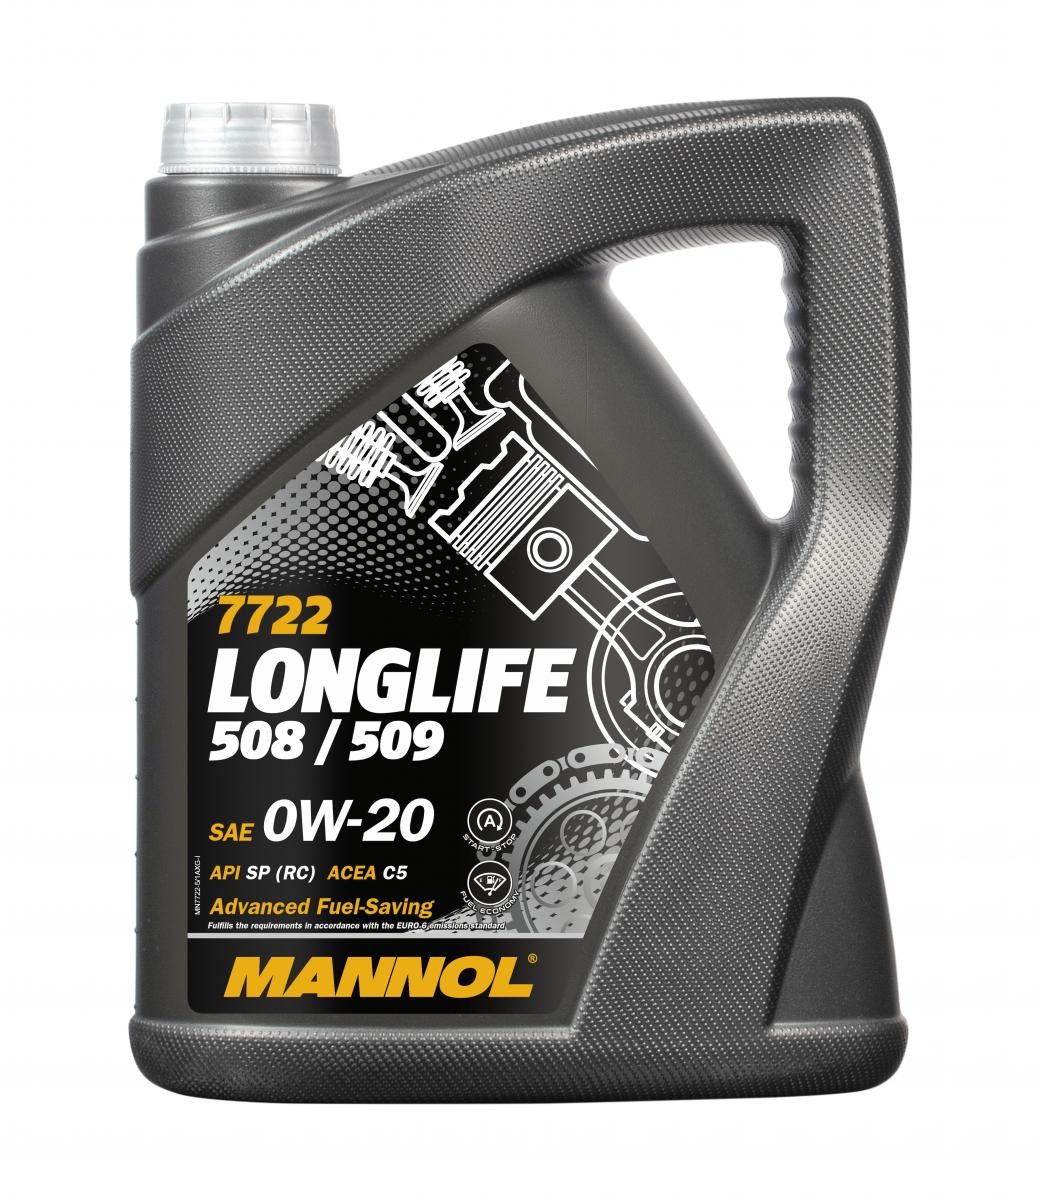 Car oil 0W-20 longlife diesel - MN7722-5 MANNOL Longlife 508/509